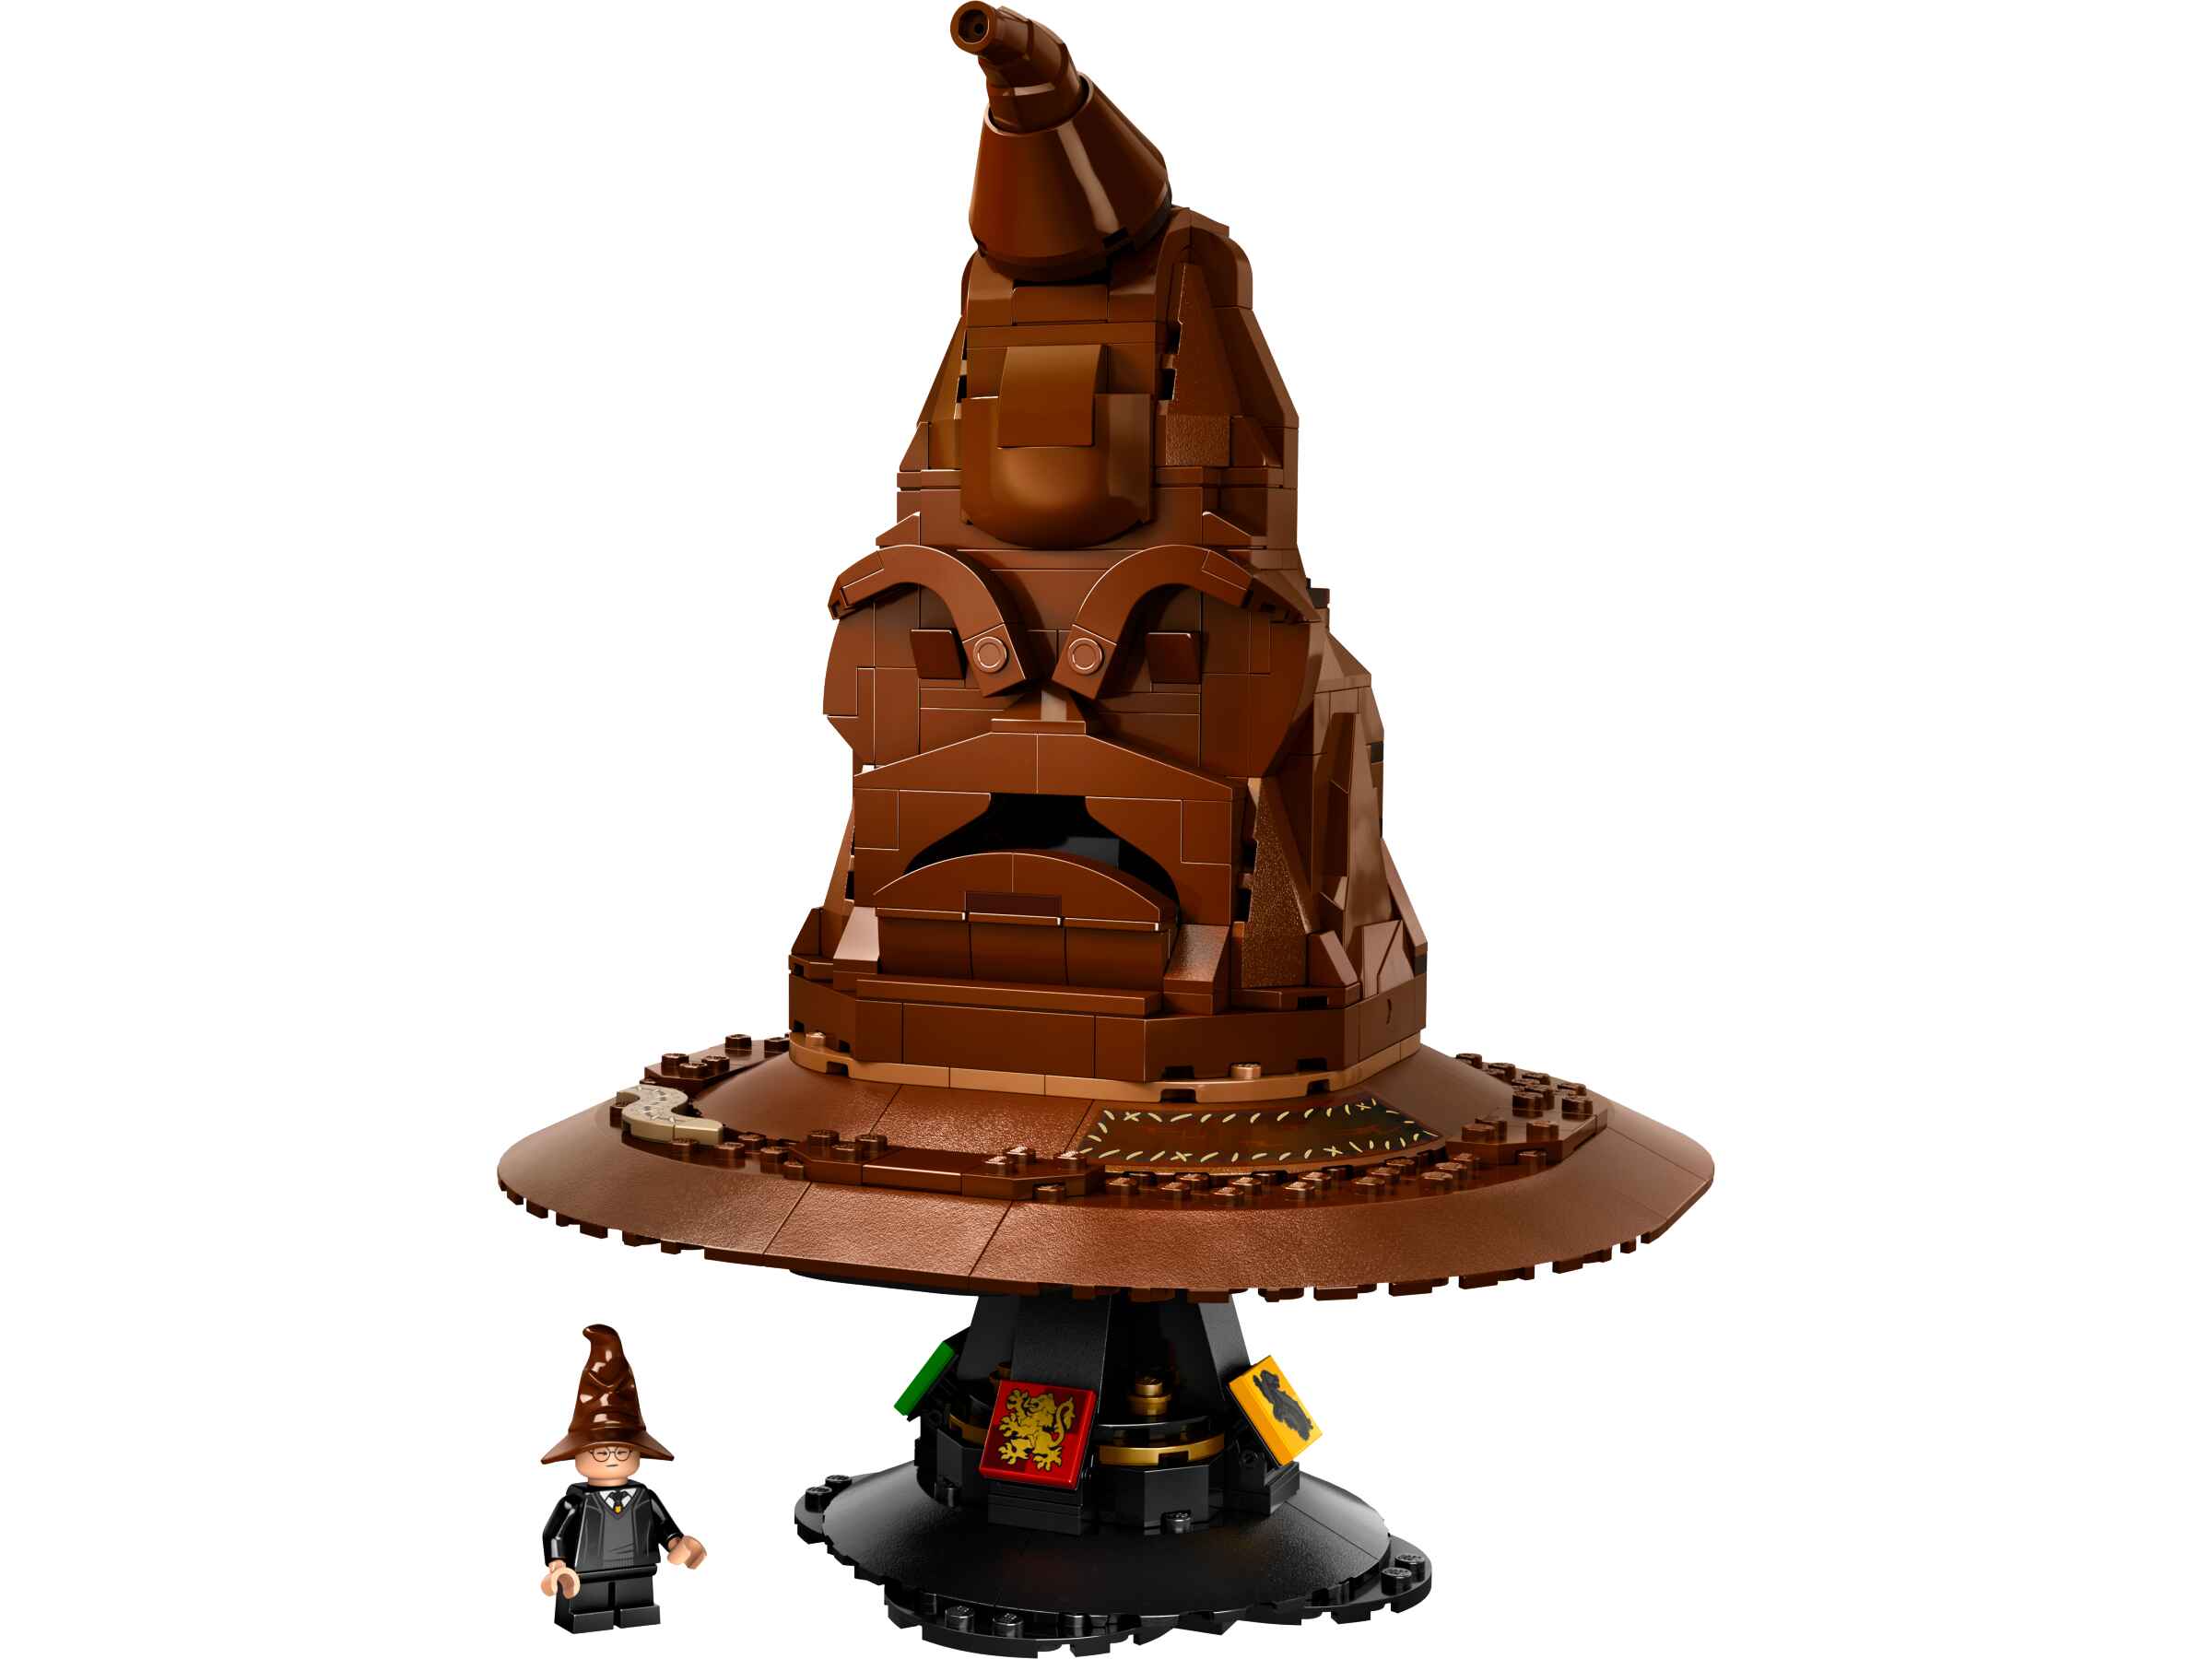 LEGO 76429 Harry Potter Der Sprechende Hut, Geräuschstein, Harry Potter Figur